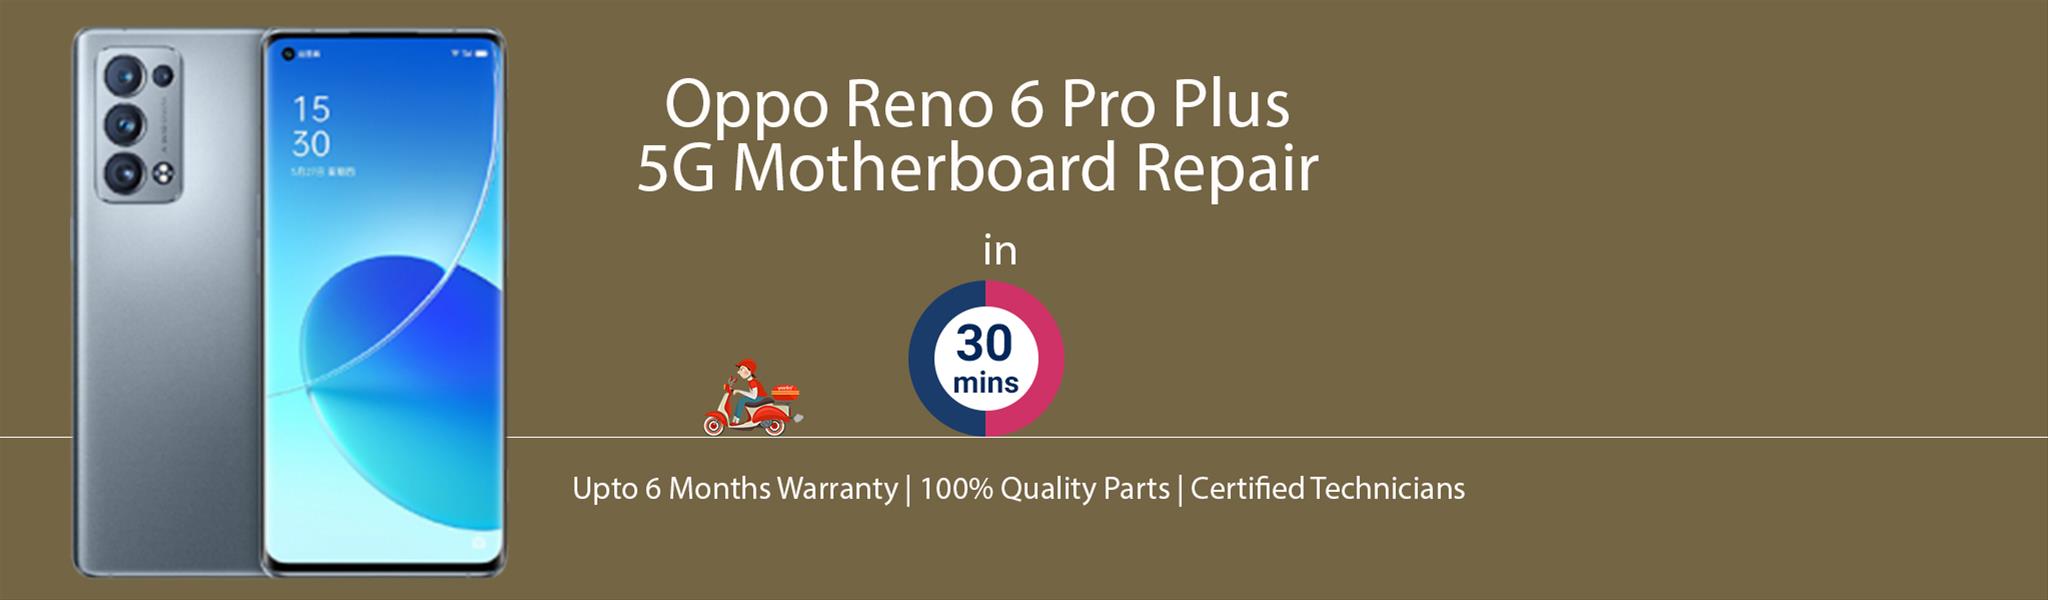 oppo-reno-6-pro-plus-5g-motherboard-repair.jpg